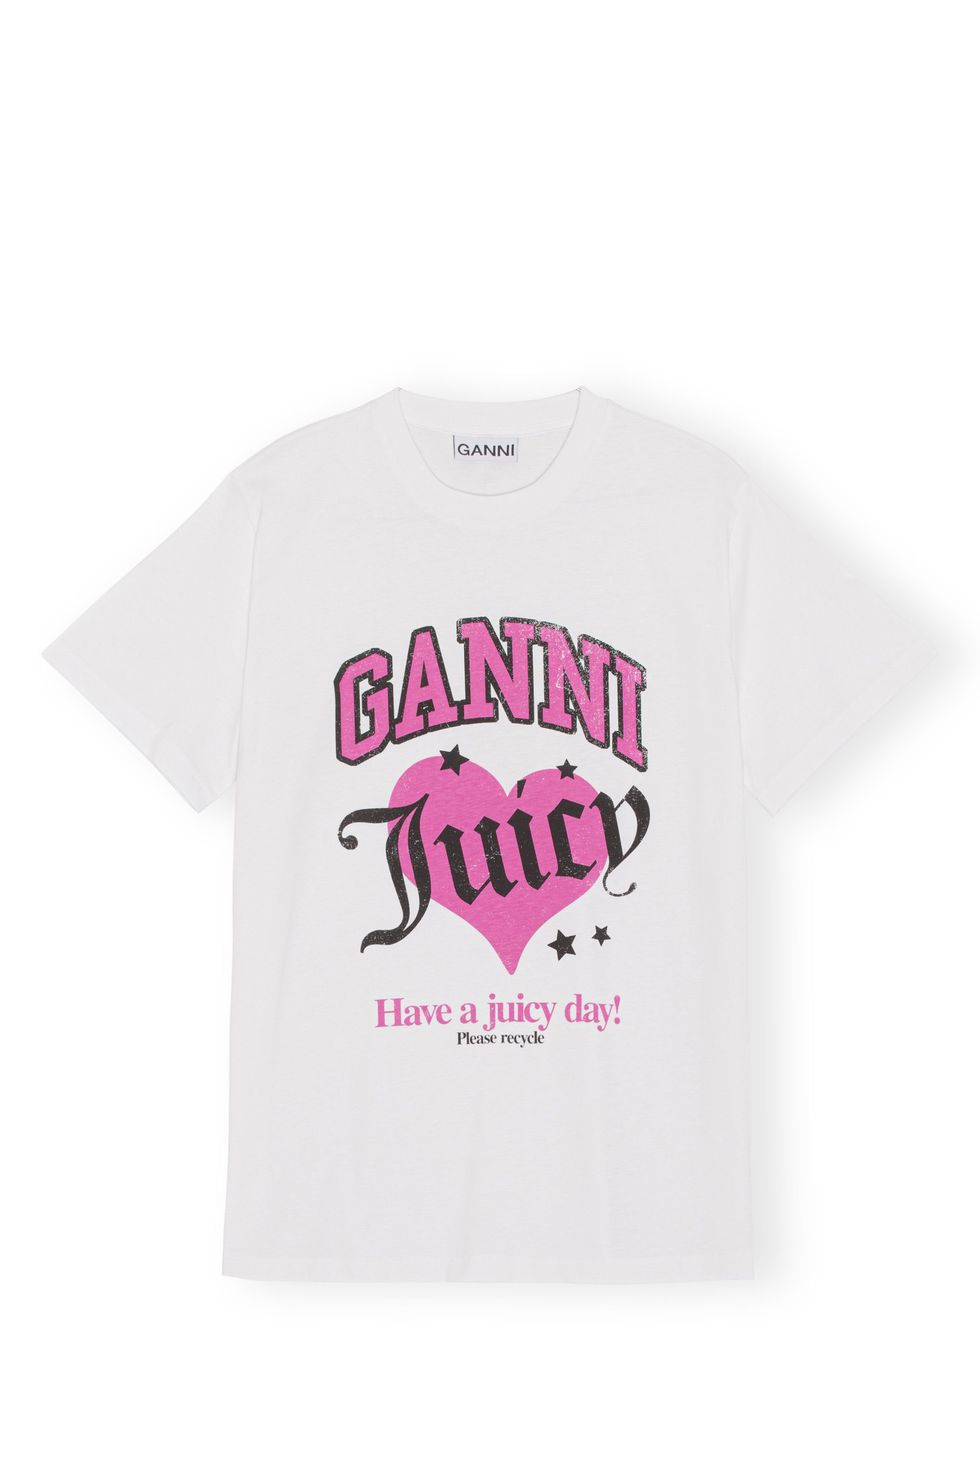 Velour tracksuit is back  Shop Ganni x Juicy Couture